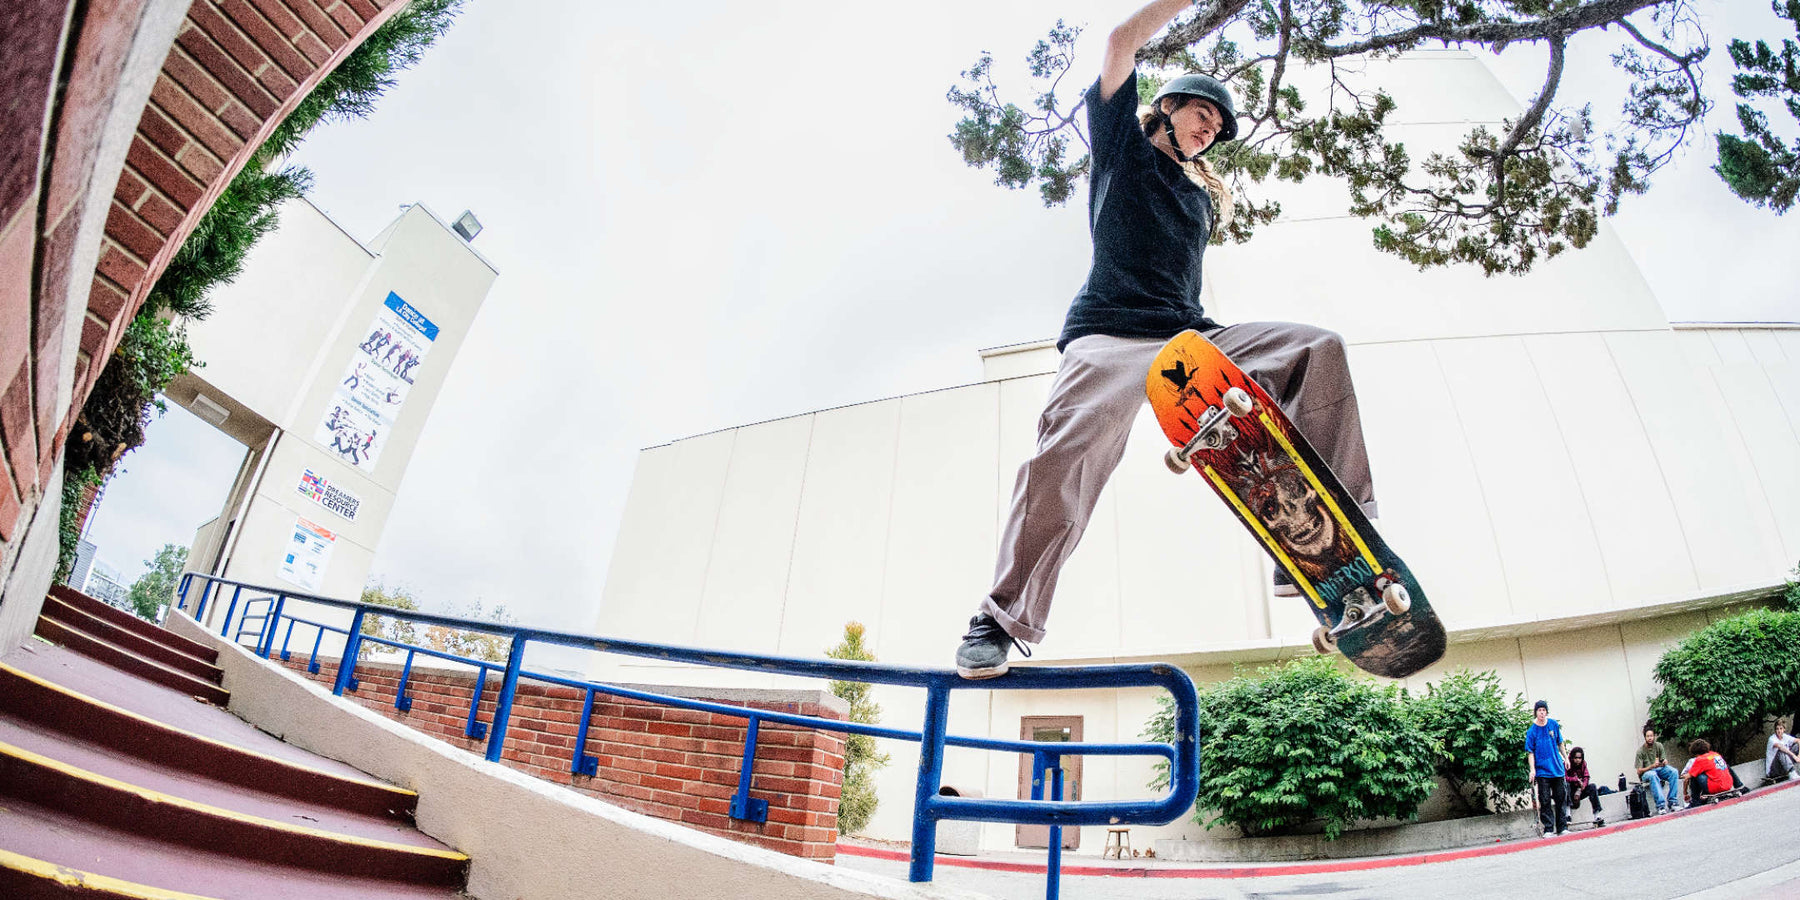 Powell Peralta Pro Flight Skateboards